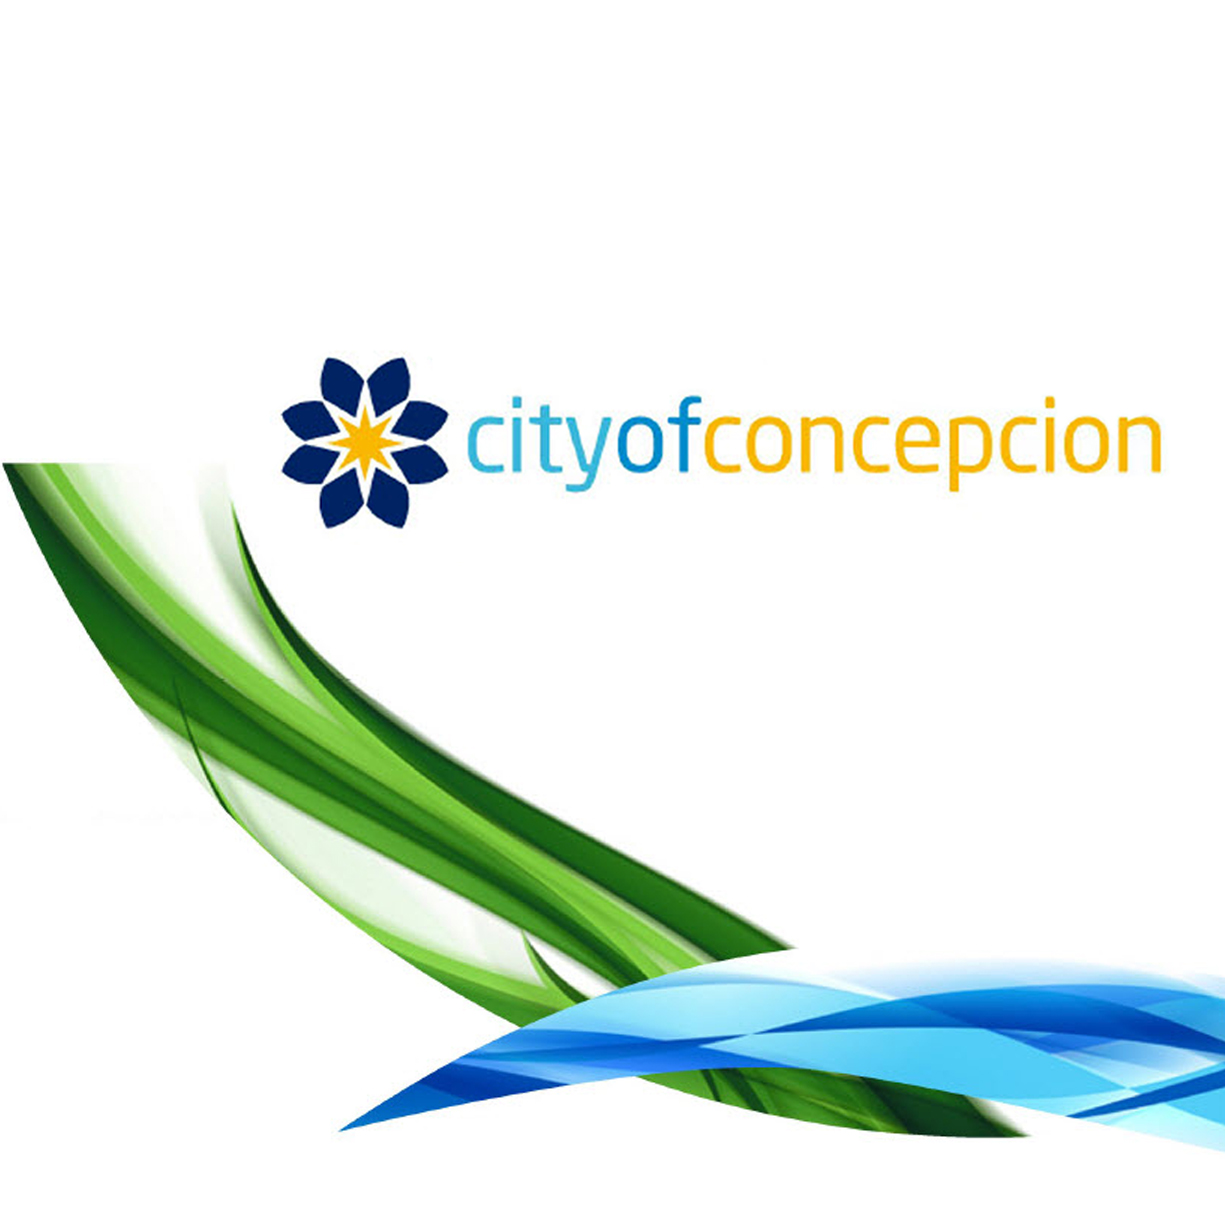 Ciudad de Concepcion City Branding 46